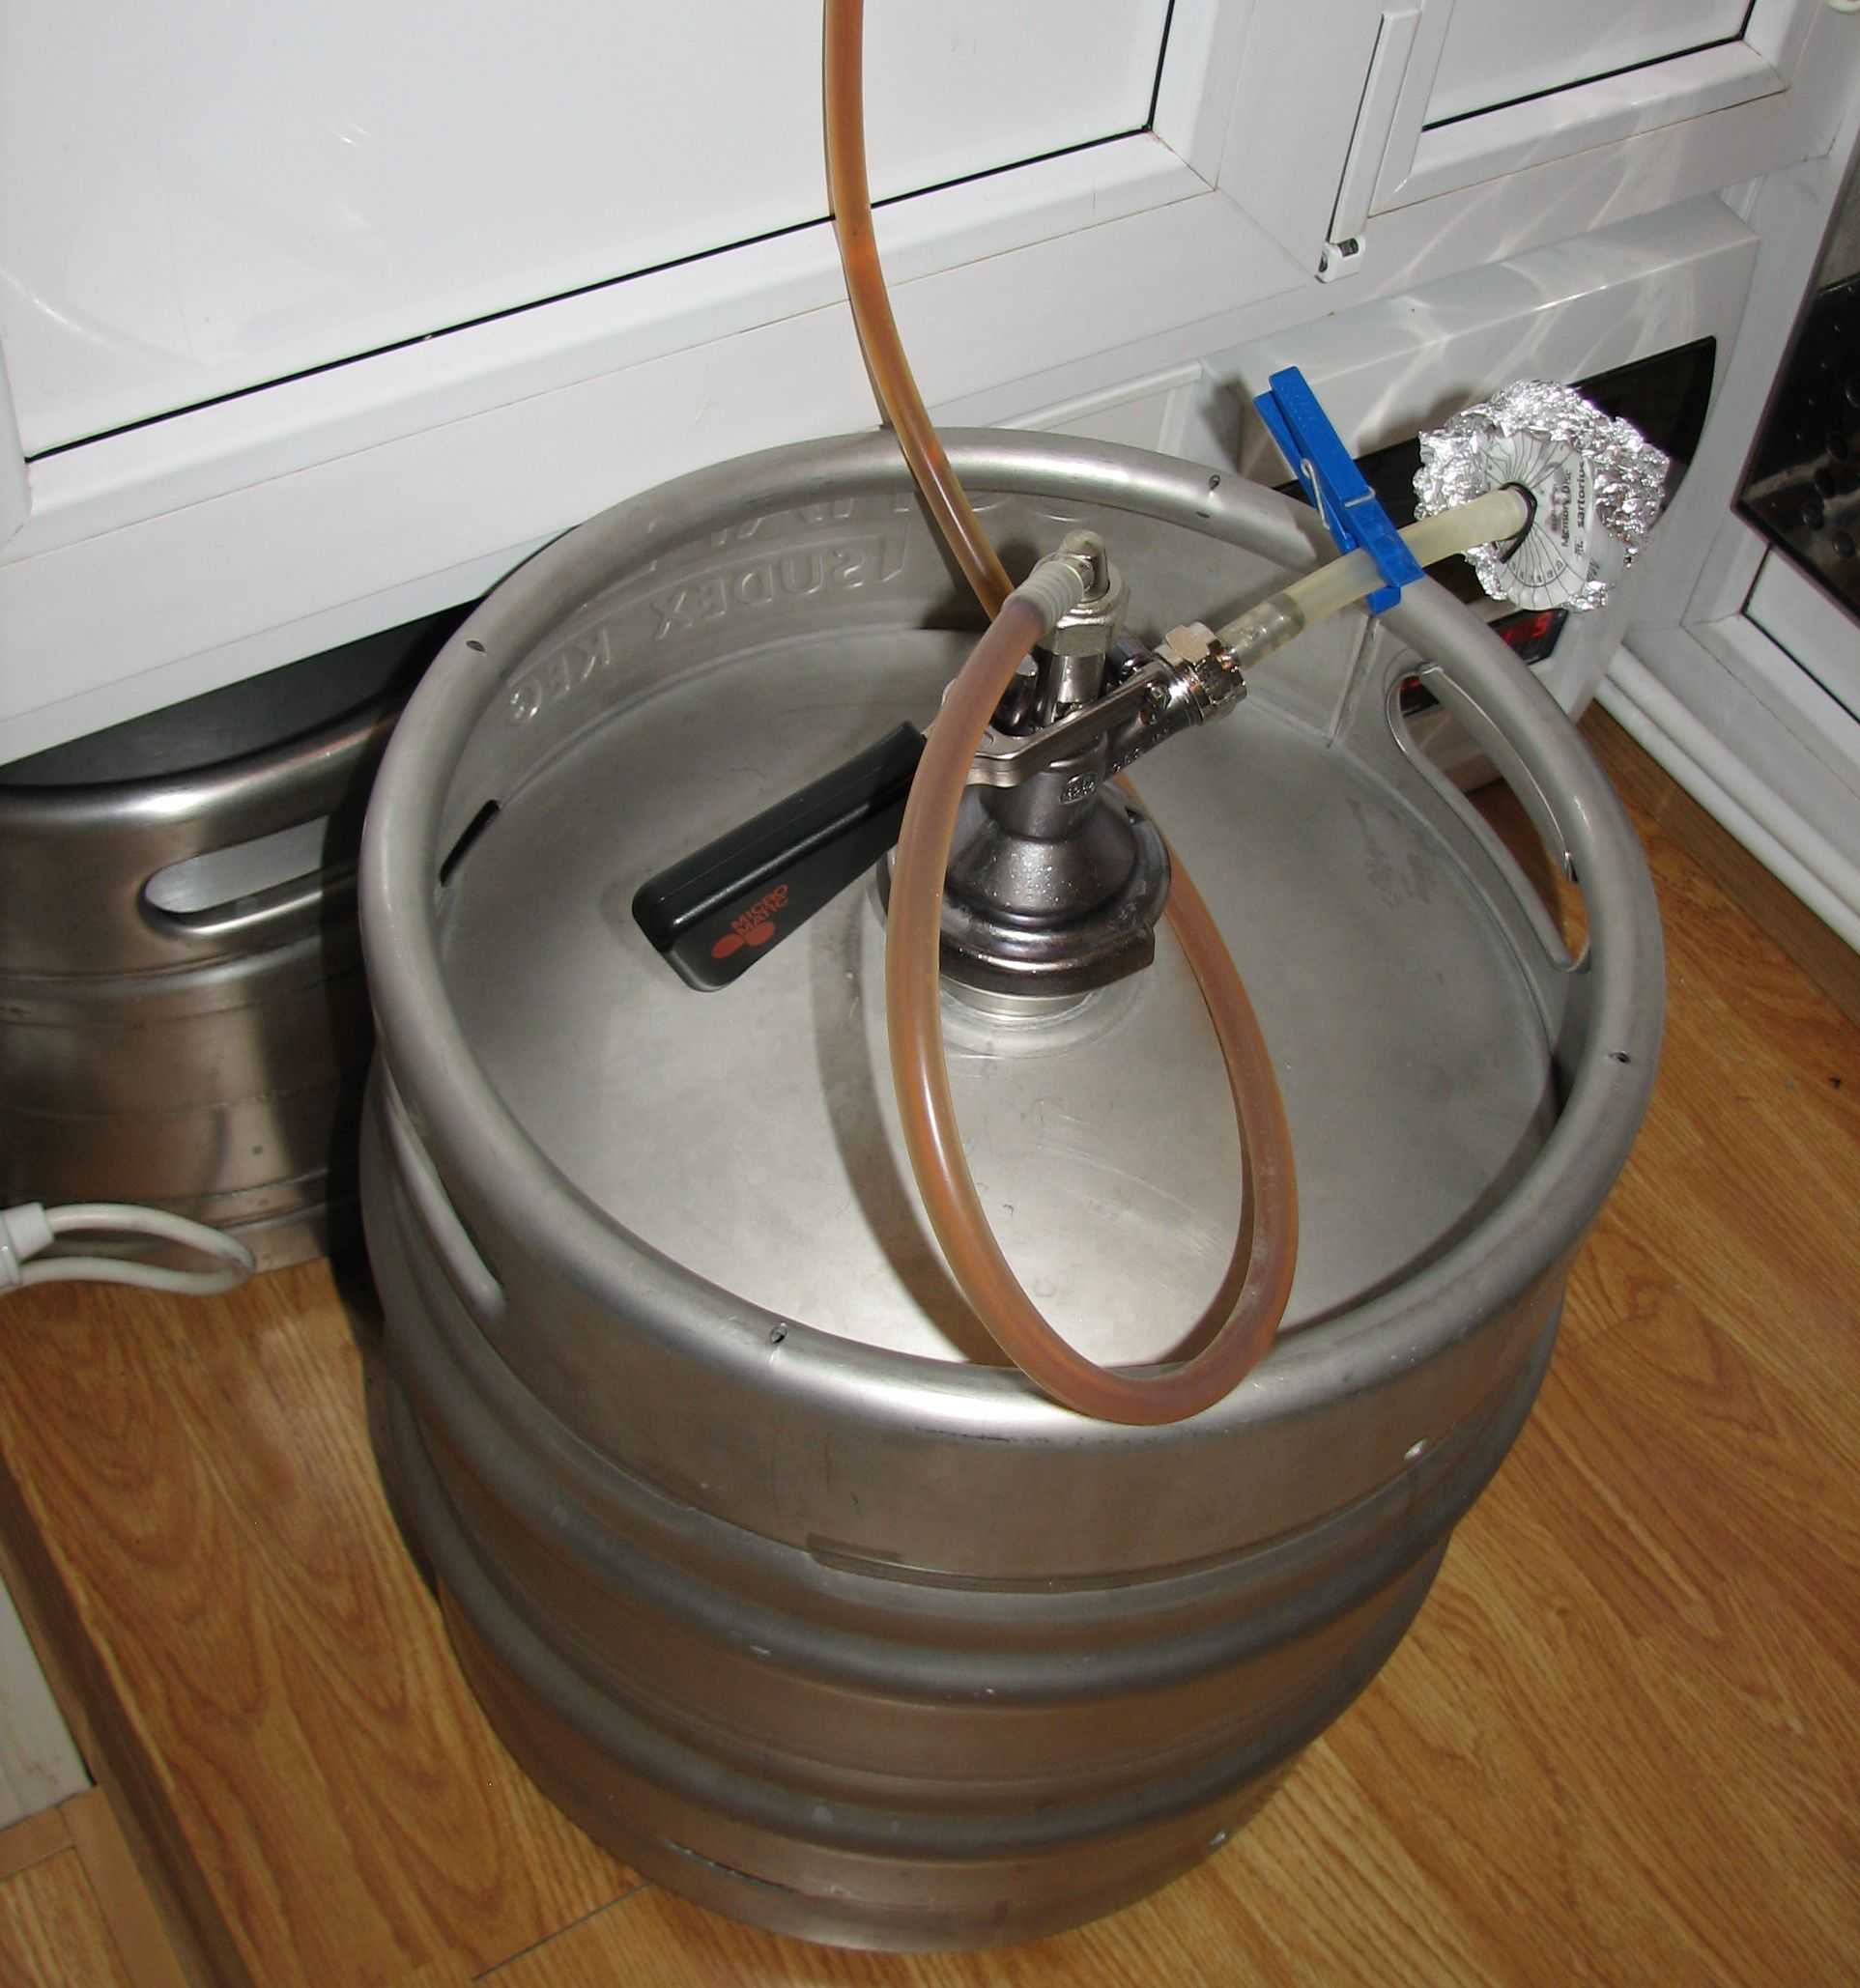 Пивное оборудование +38 067 009-8009: системы розлива пива. часть 2. кегератор (рефрижератор для кег, кег-мастер) - пивной холодильник